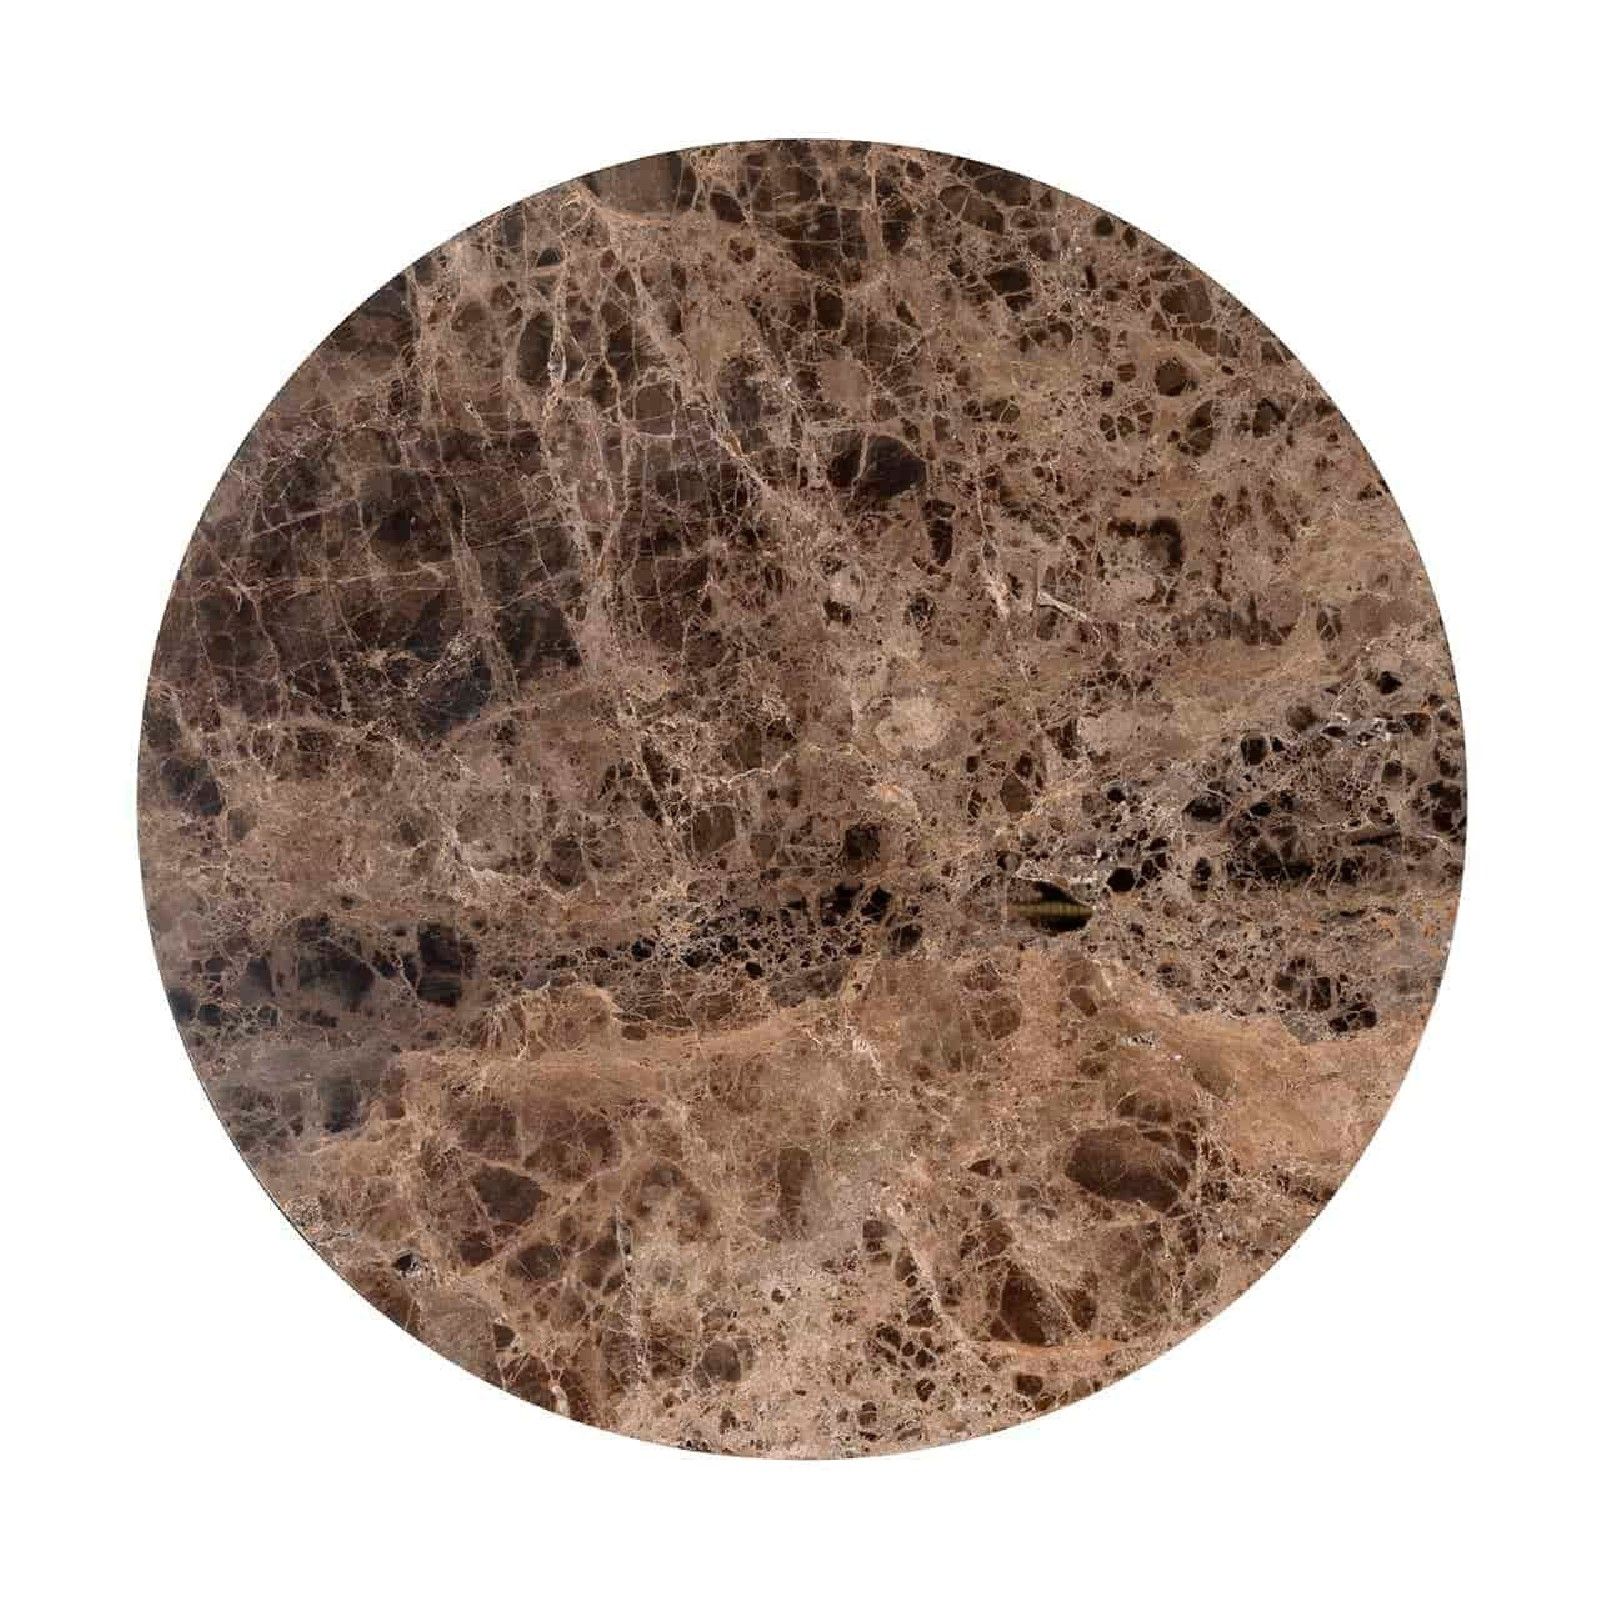 Table basse ronde 80Ø - Fer et marbre brun 